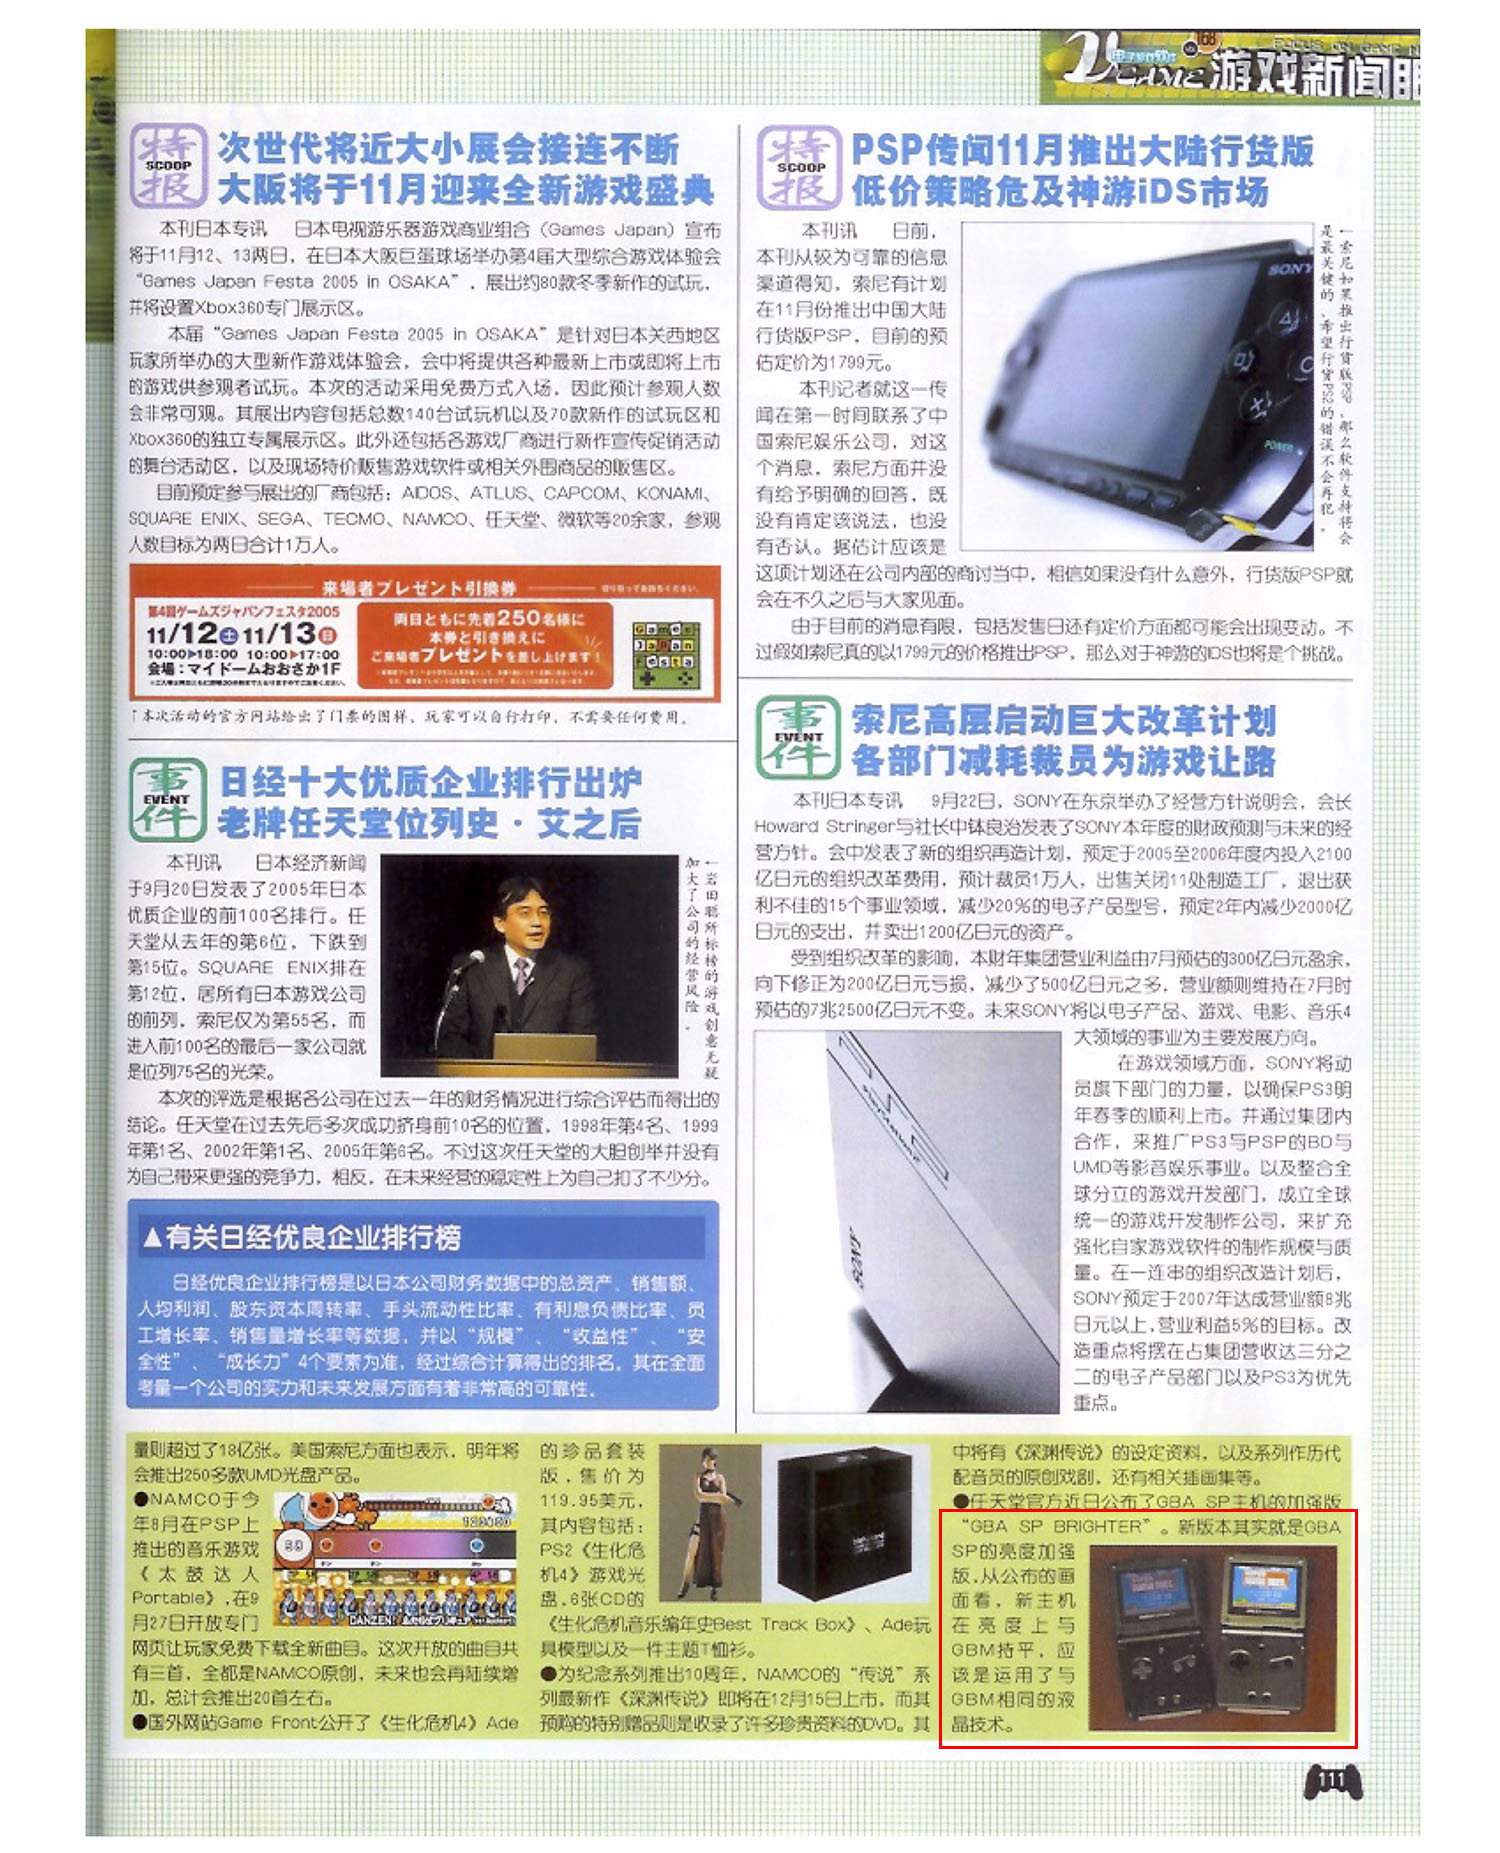 168 выпуск журнала «电子游戏软件»